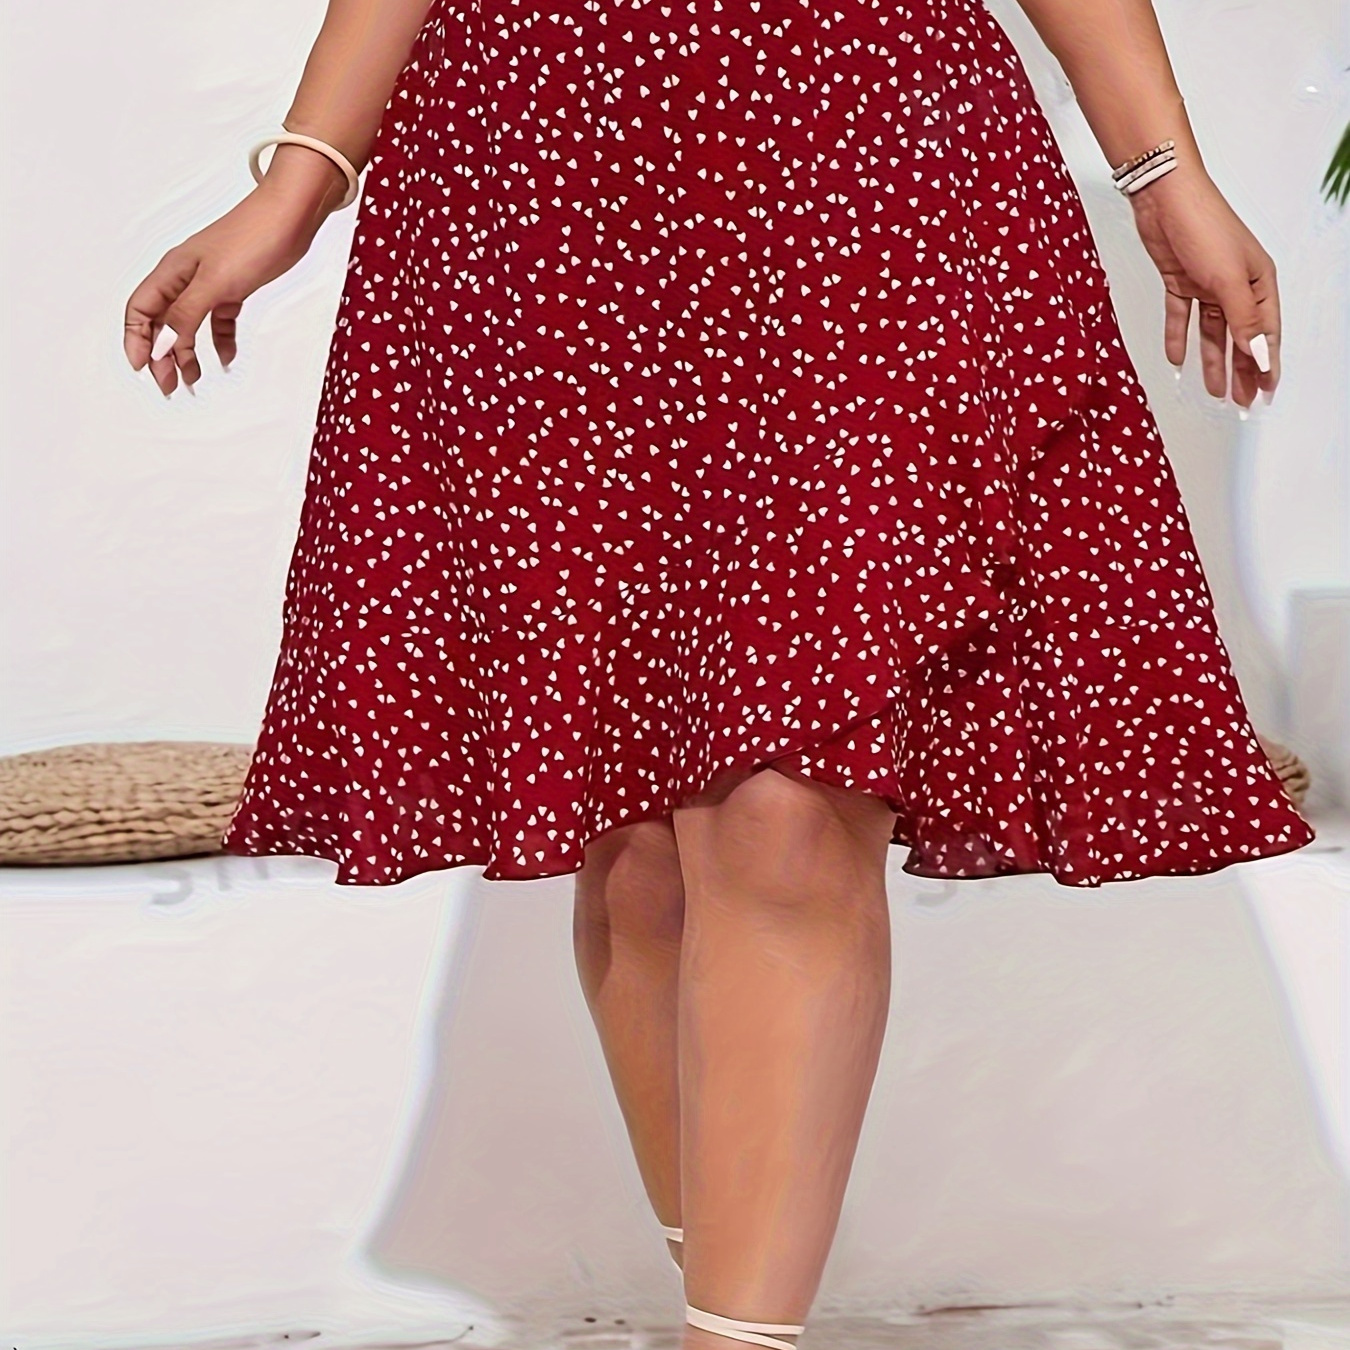 

Plus Size Heart Print Skirt, Elegant High Waist Skirt For Spring & Summer, Women's Plus Size Clothing